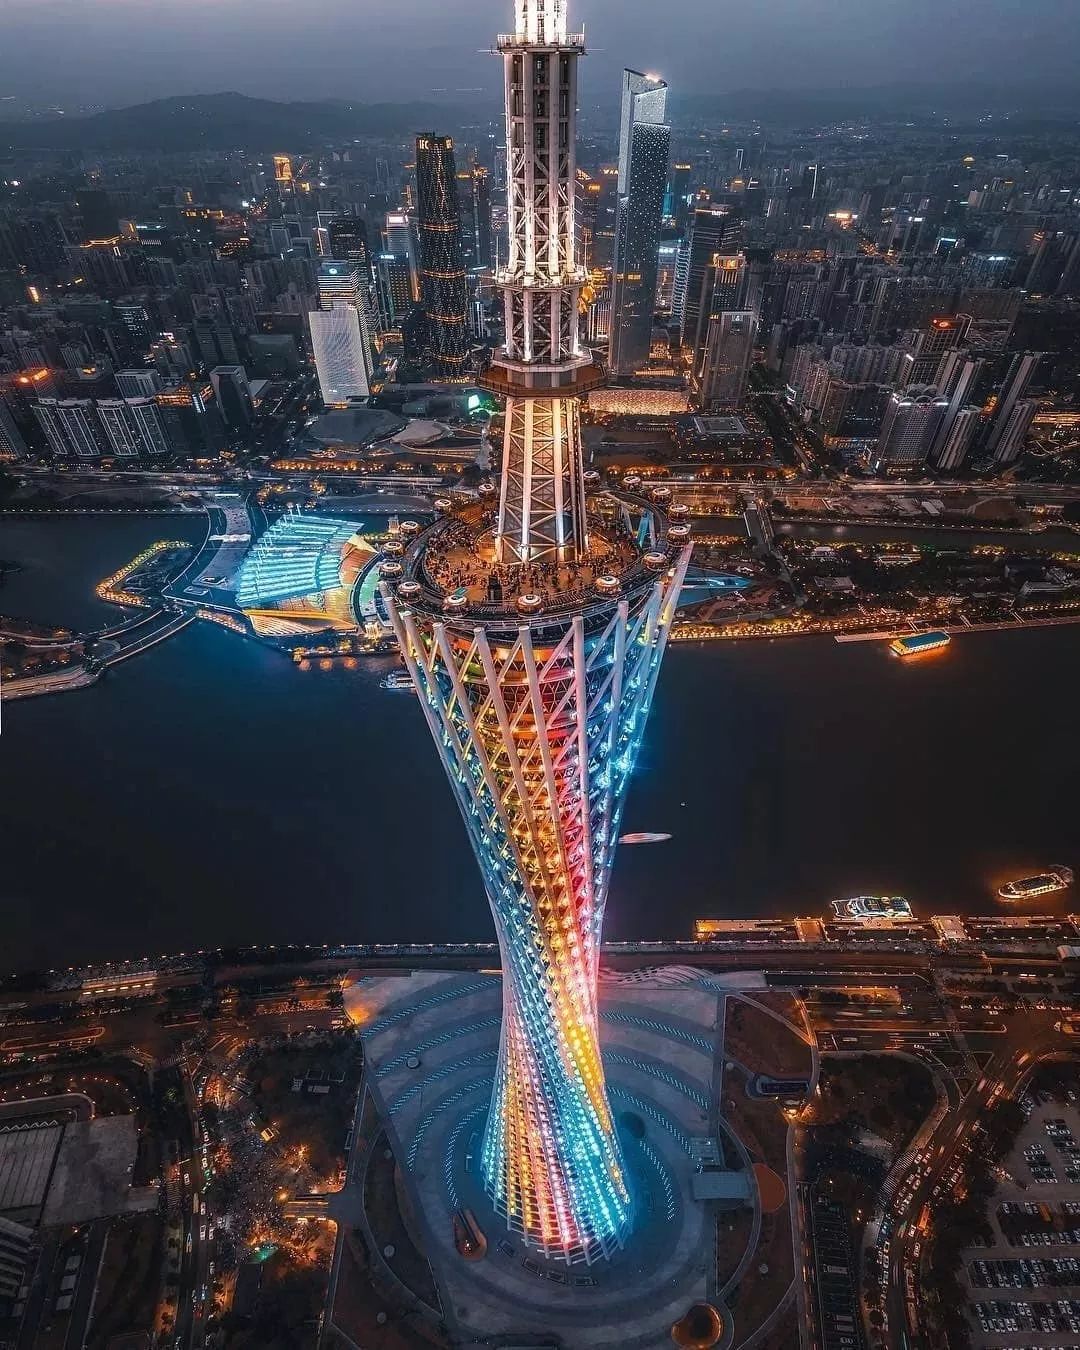 广州塔主塔体高450米,天线桅杆高150米,建筑总高度600米,是中国第一